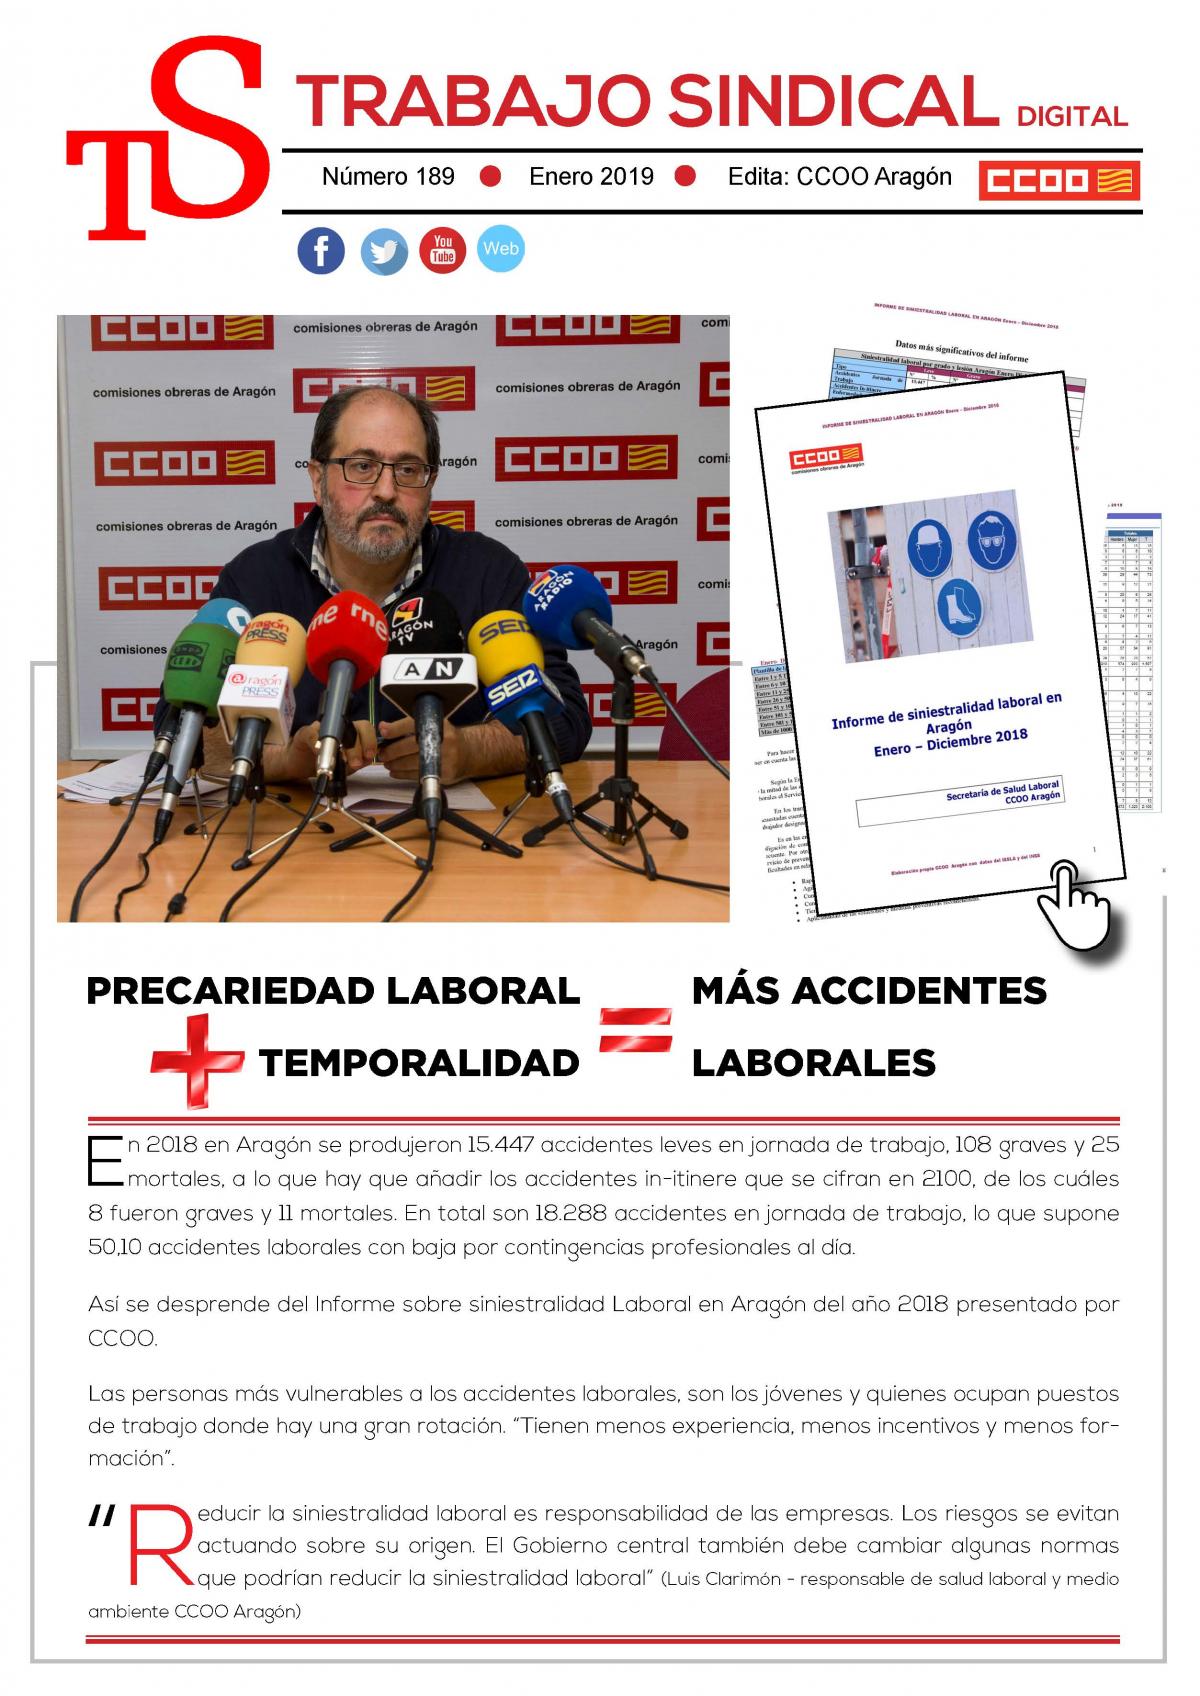 Informe siniestralidad laboral en Aragón 2018.